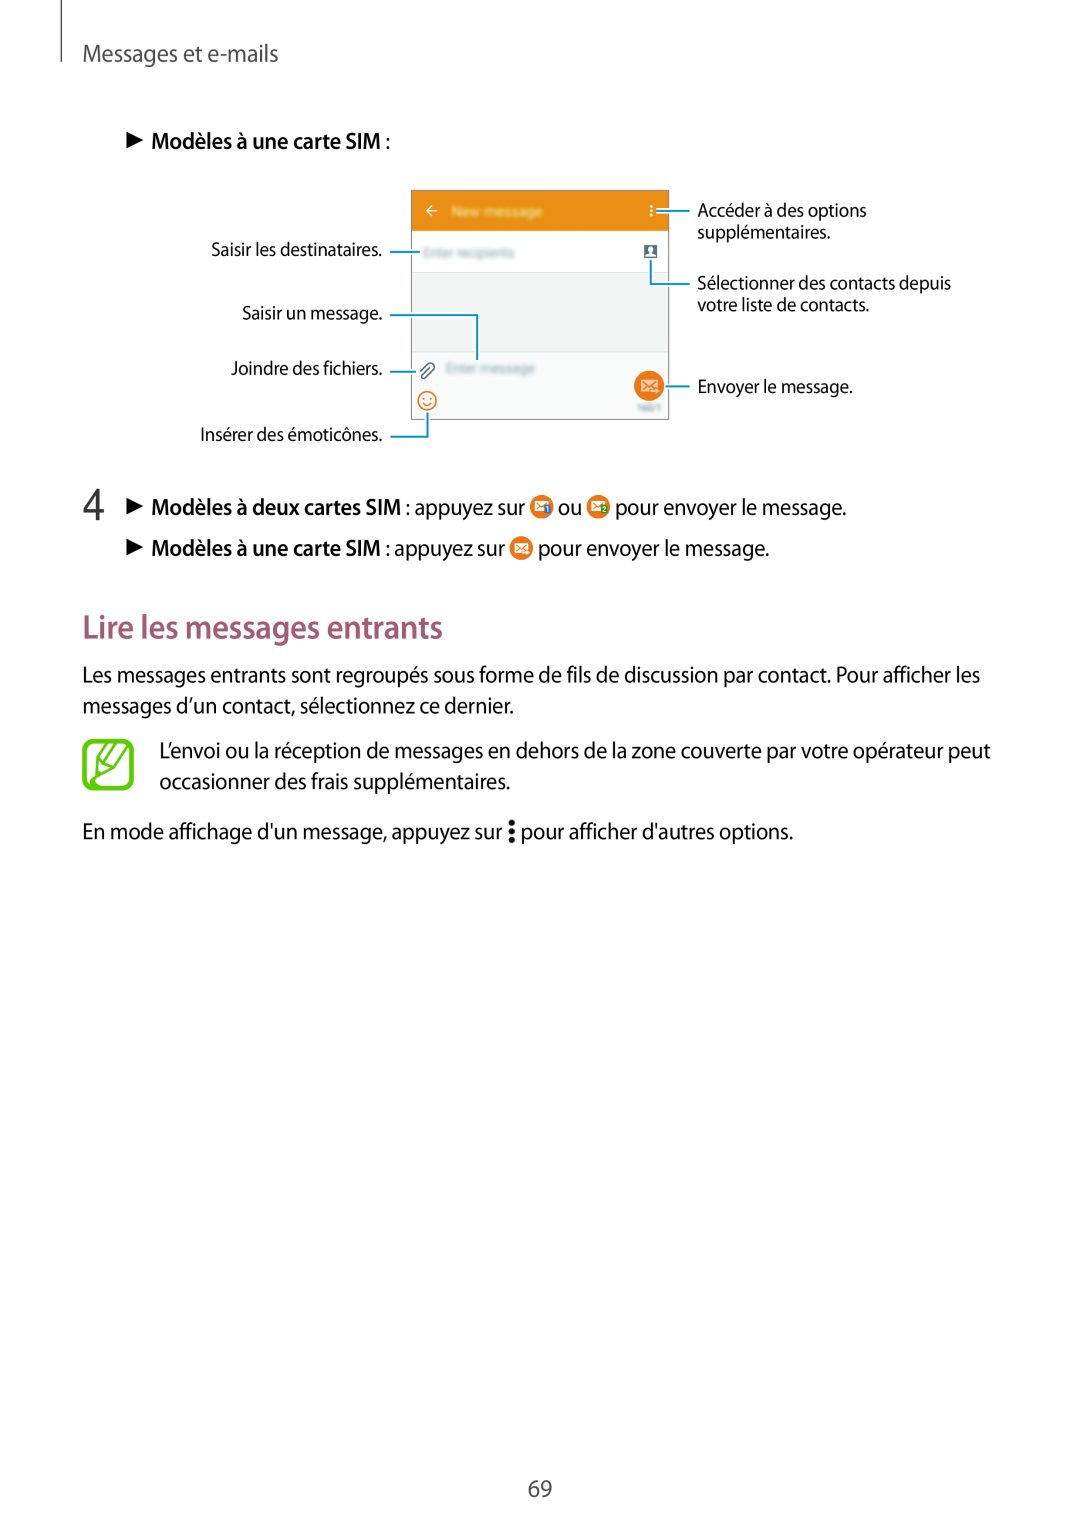 Samsung SM-A500FZWUBOG, SM-A500FZWUXEF manual Lire les messages entrants, Messages et e-mails, Modèles à une carte SIM 